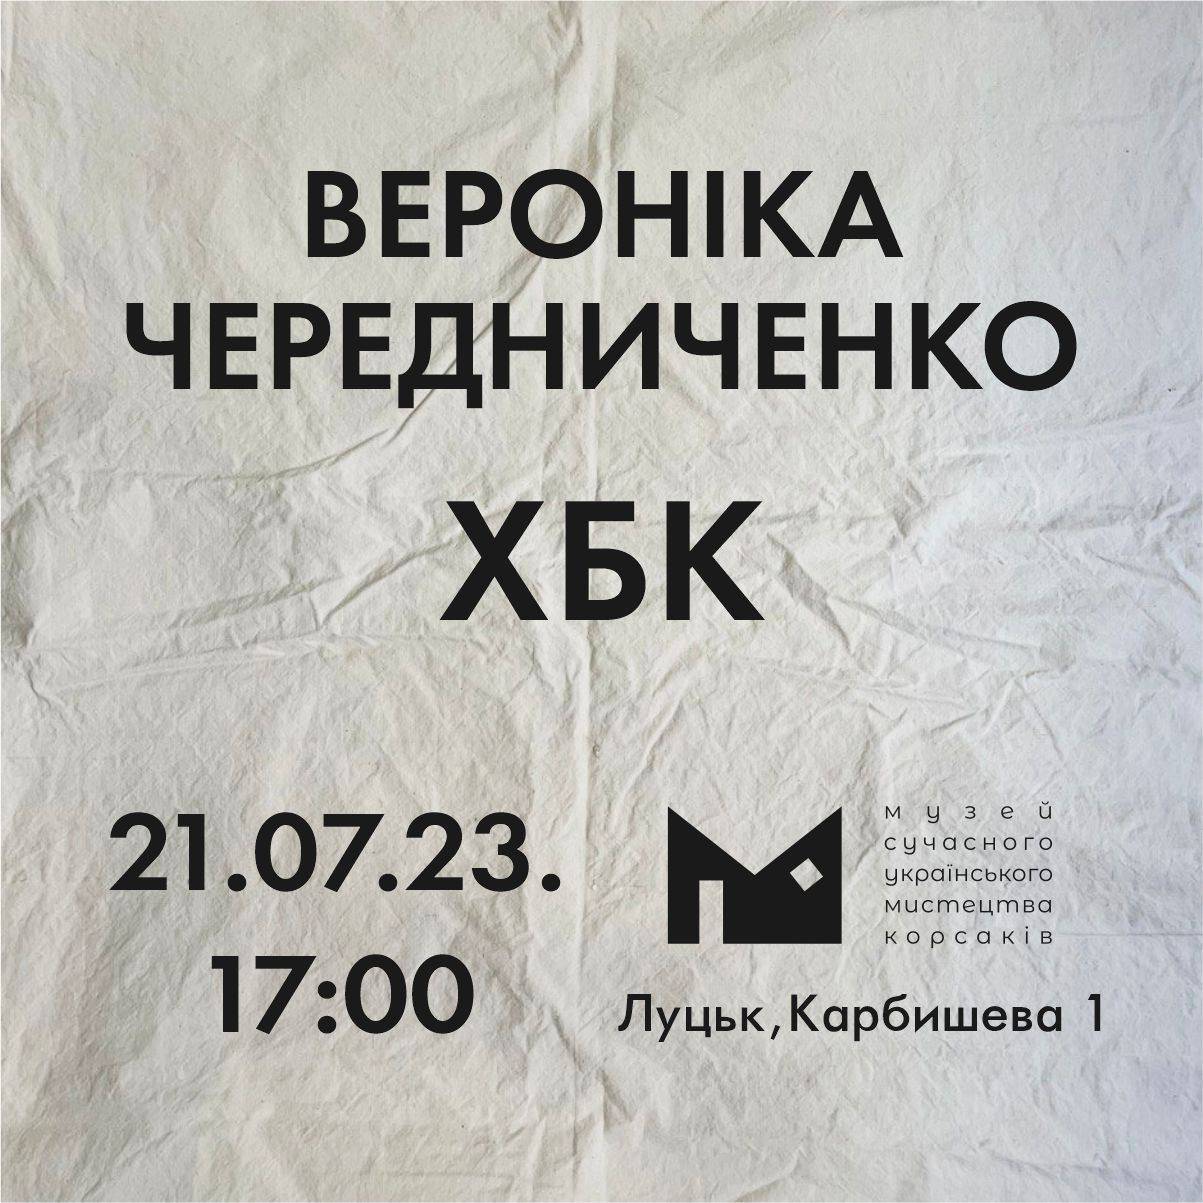 (Українська) 21.07 о 17:00 в Музеї Корсаків відбудеться відкриття проєкту Вероніки Чередниченко «ХБК»!